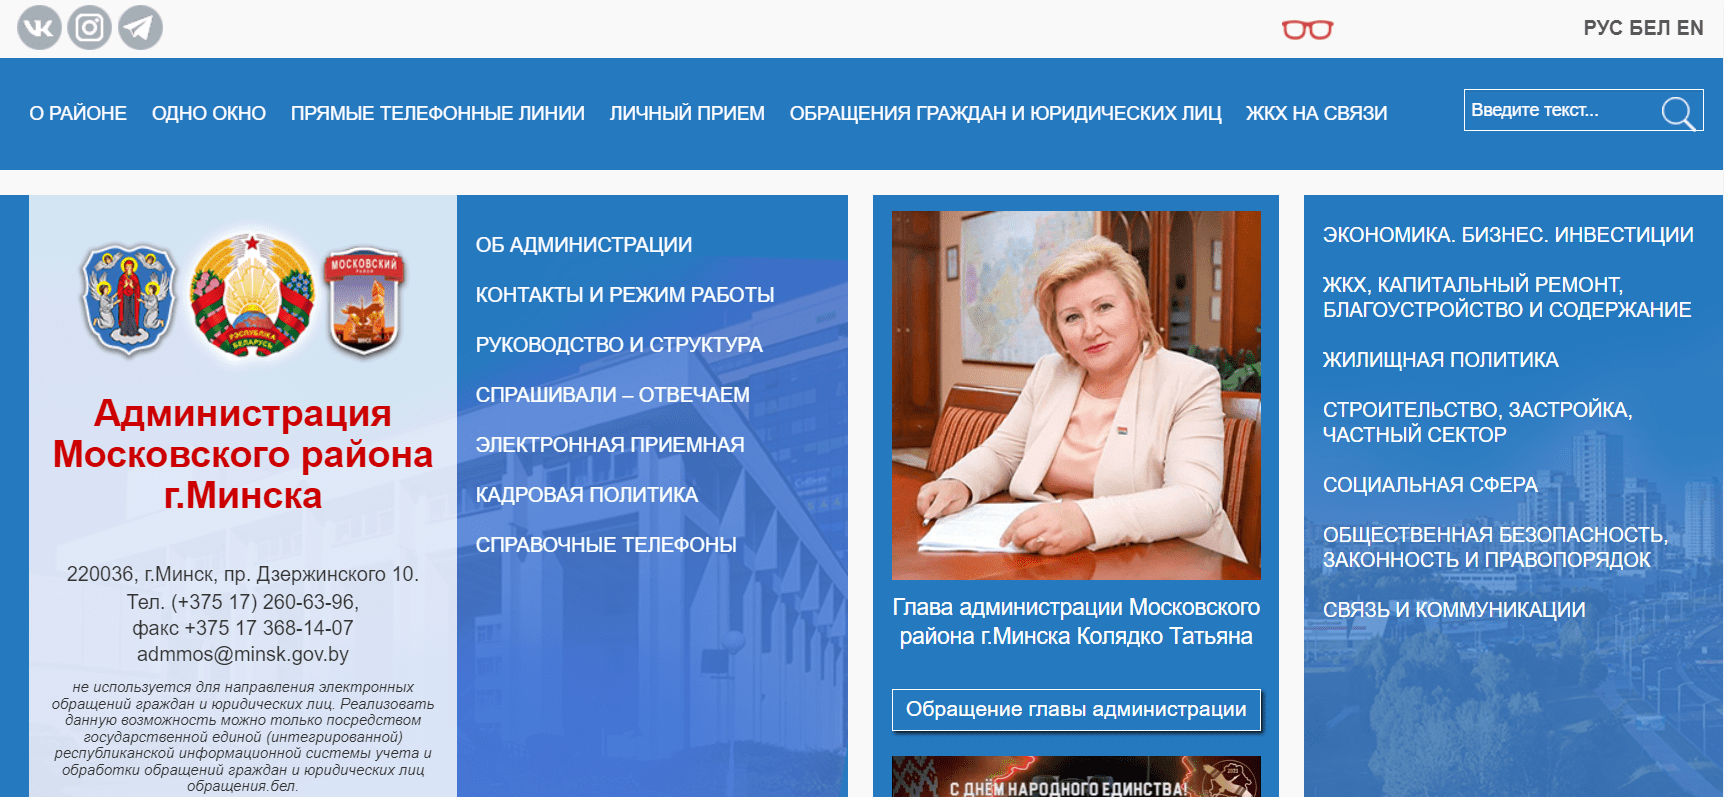 Администрация Московского района г. Минска (mosk.minsk.gov.by) - официальный сайт